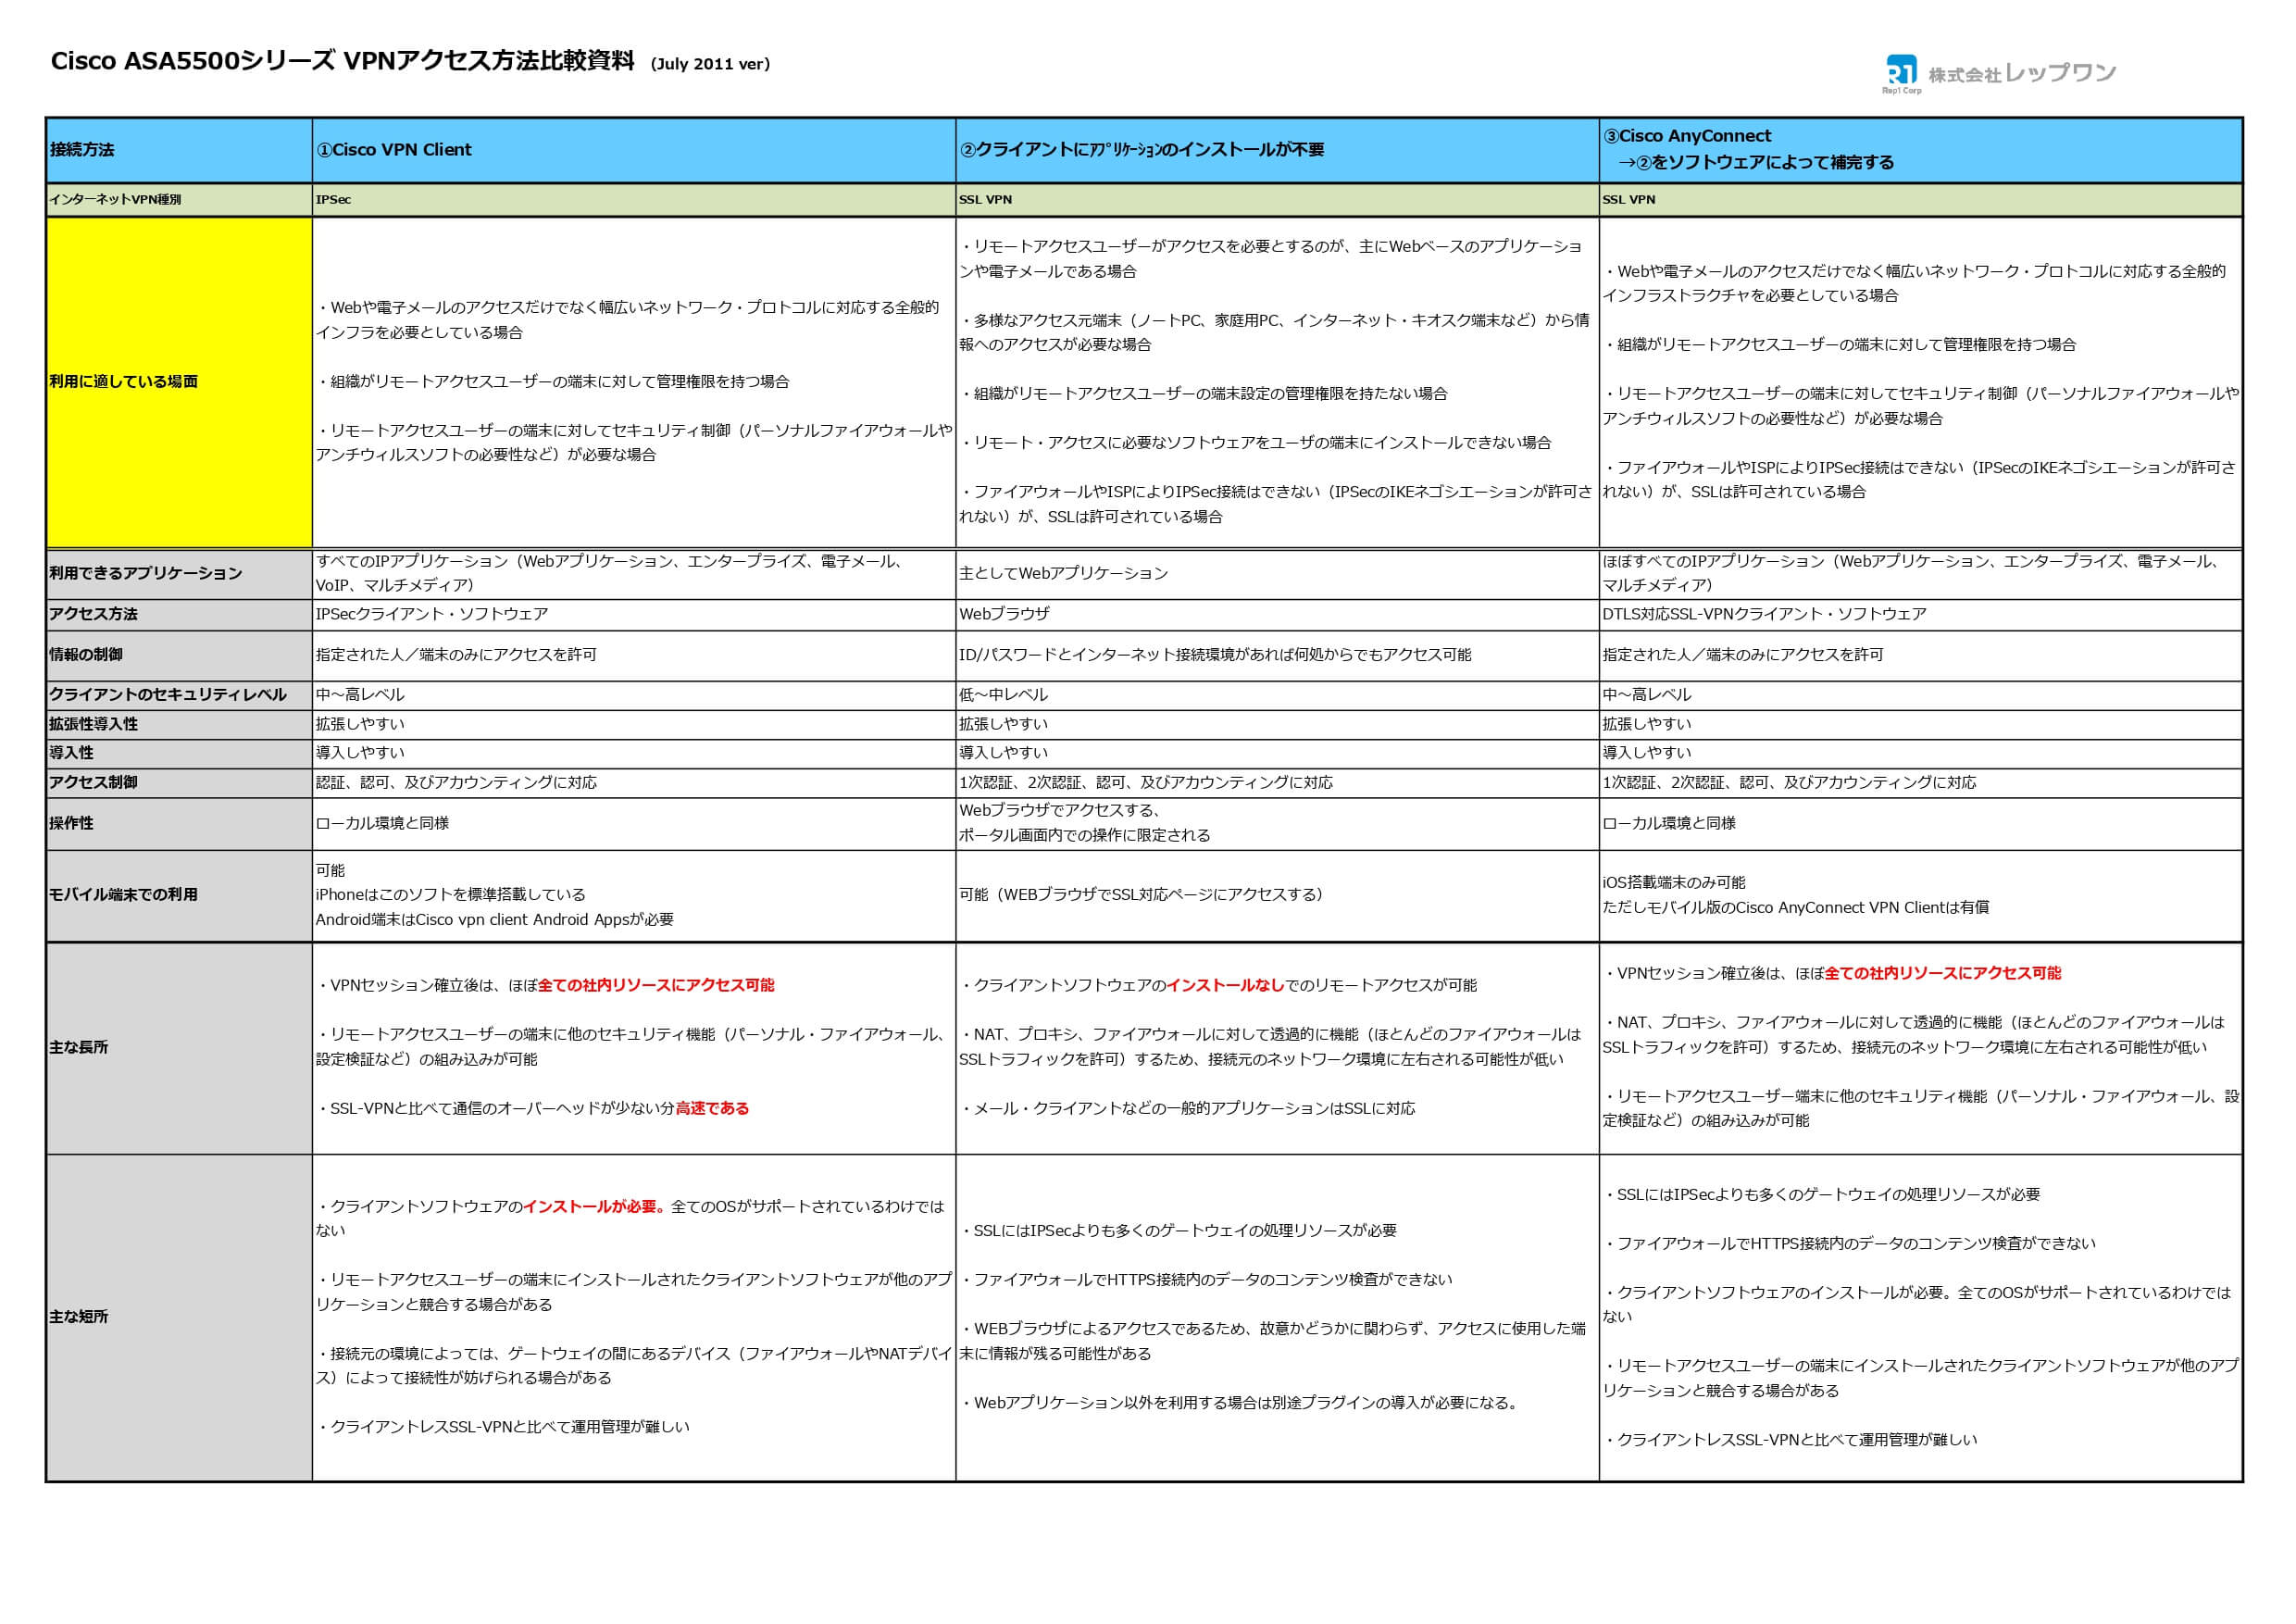 /data_fukuta/image_pdf/110706_ASAVPNcomparison